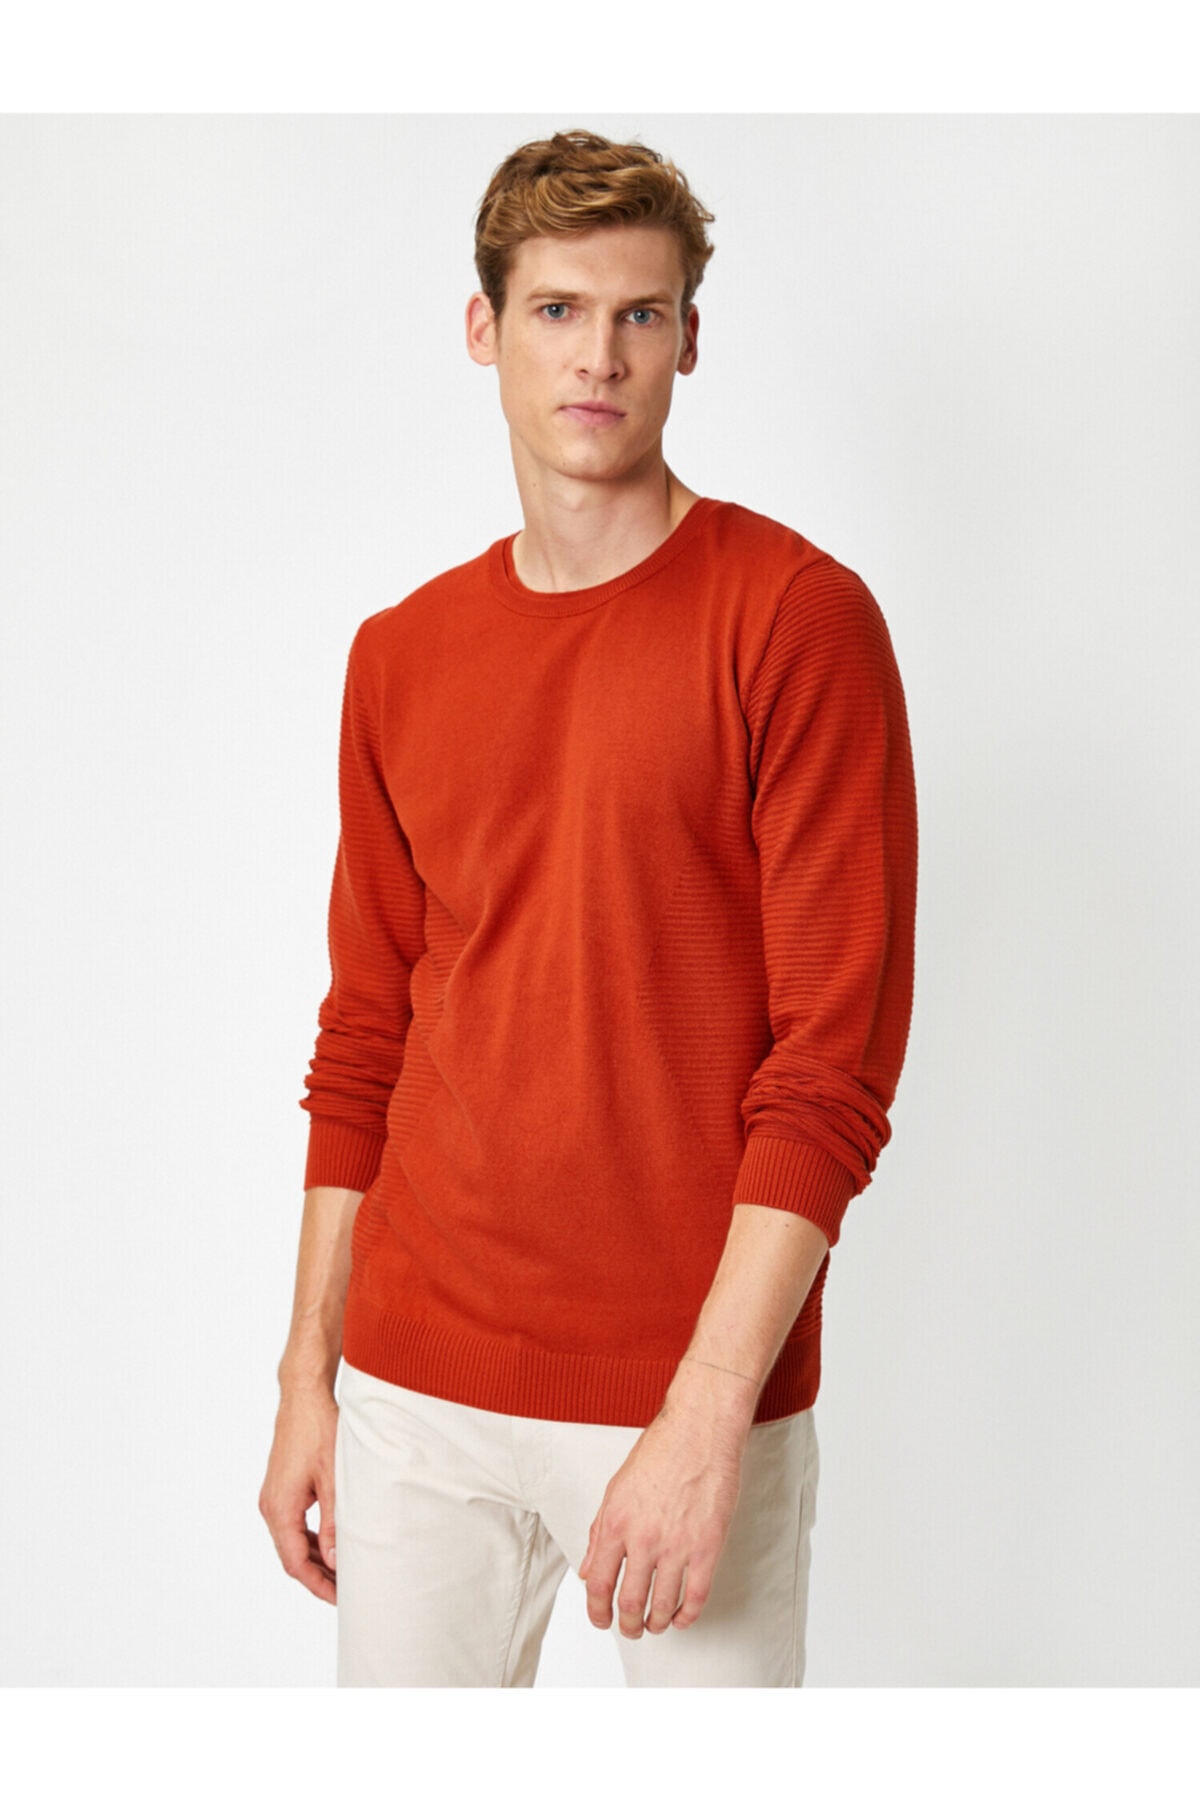 Koton Pullover Orange Regular Fit Fast ausverkauft